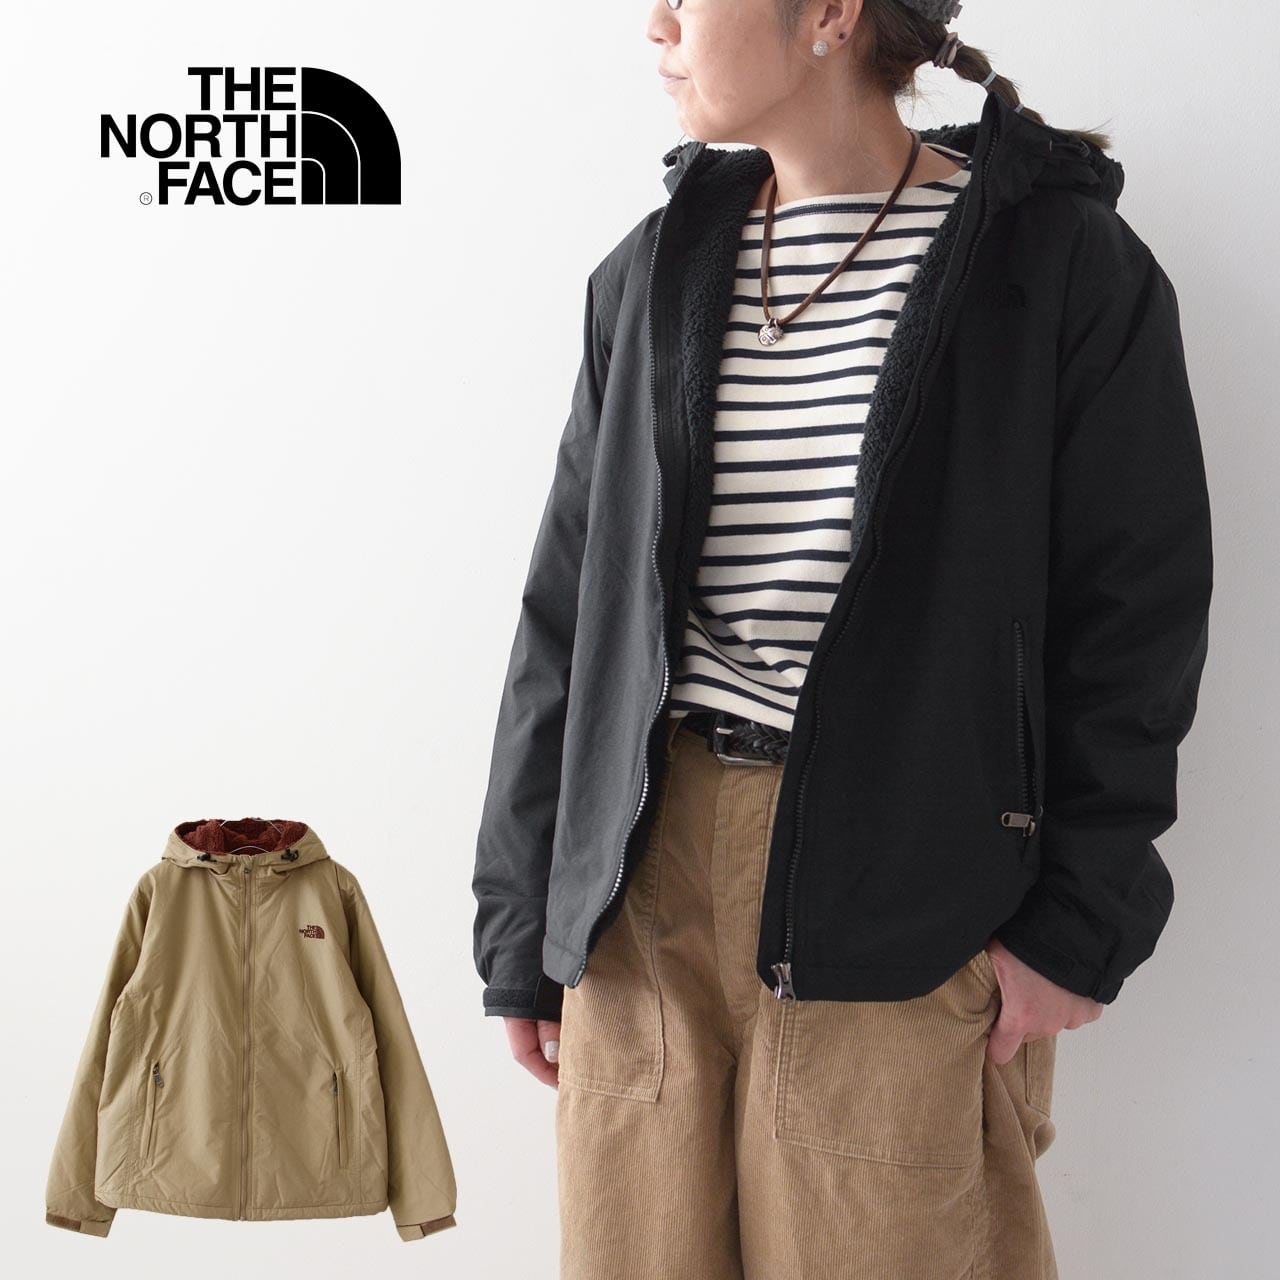 THE NORTH FACE [ザ・ノースフェイス正規代理店] W's Compact Nomad ...